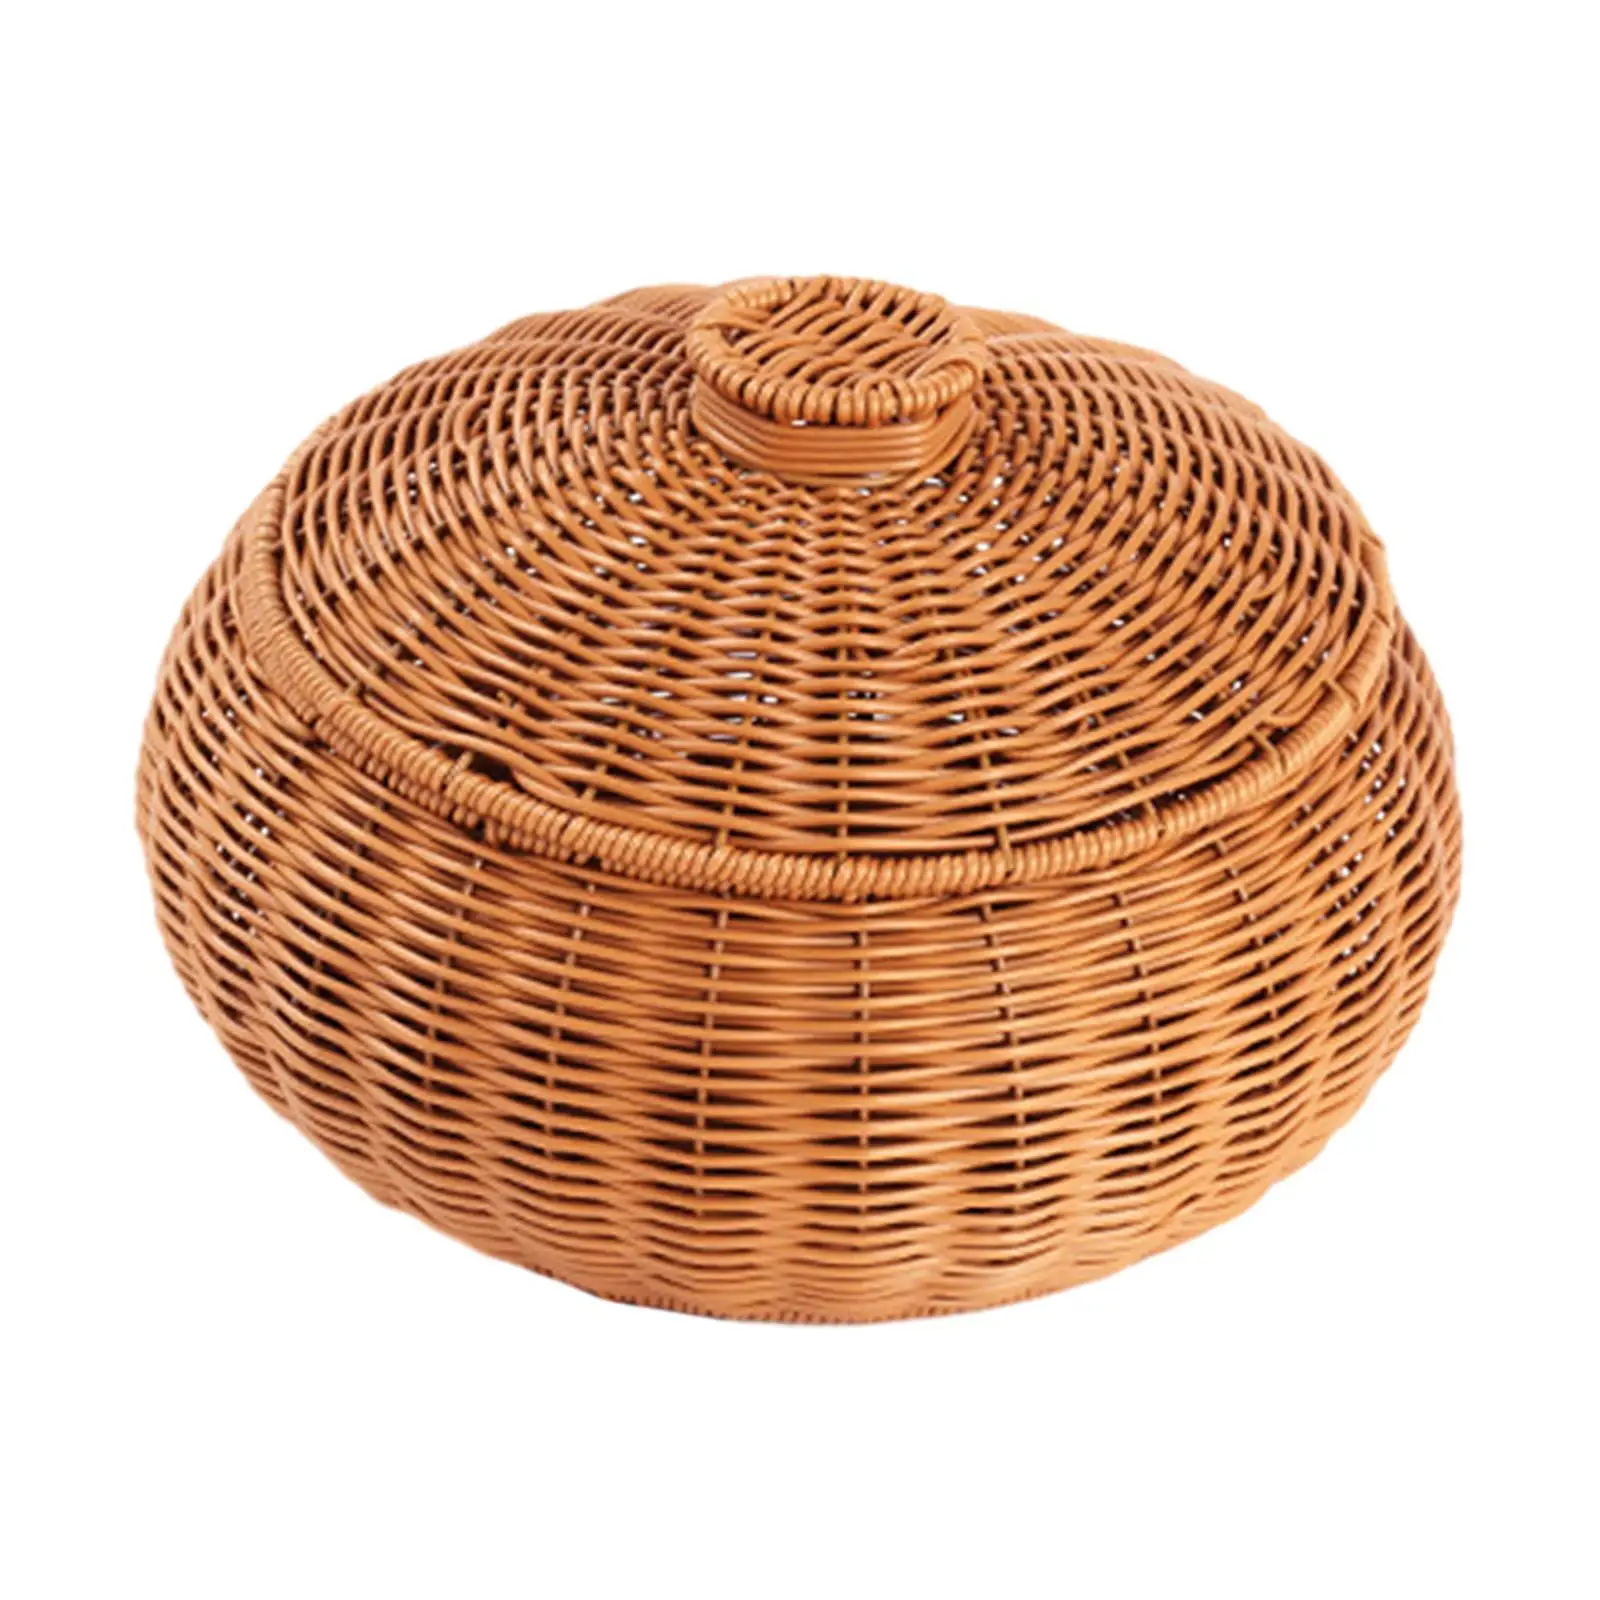 Hand Woven Basket Desk Clutter Organization Crafts Food Storage Basket for Restaurant Bedroom Home Living Room Shelves